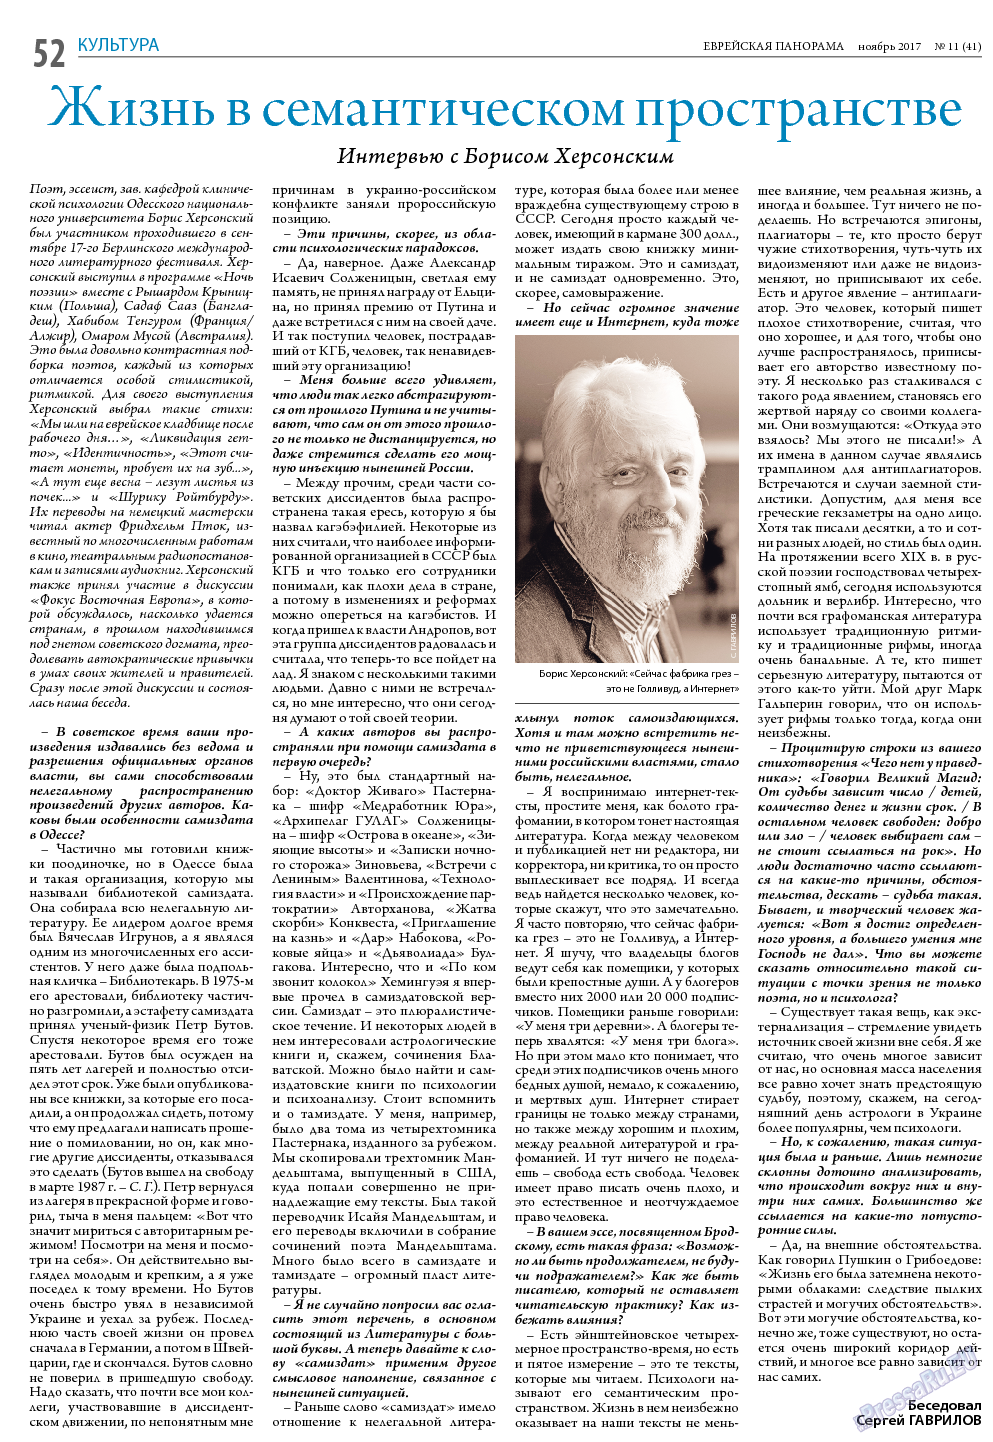 Еврейская панорама (газета). 2017 год, номер 11, стр. 52